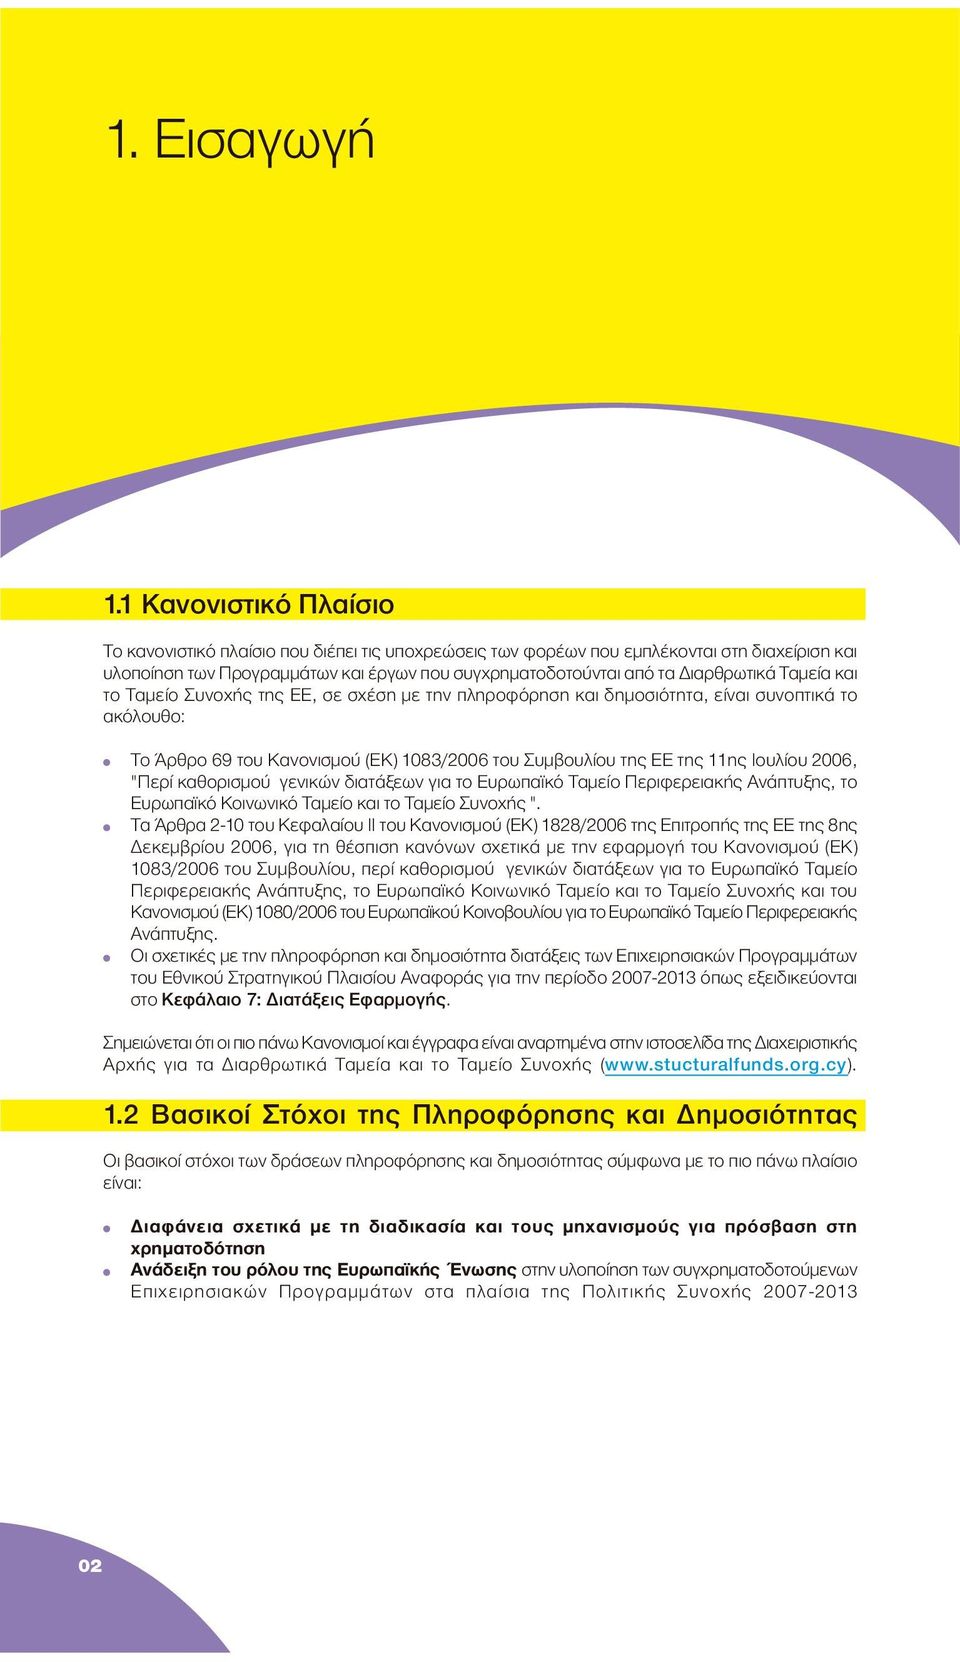 Ταµεία και το Ταµείο Συνοχής της ΕΕ, σε σχέση µε την πληροφόρηση και δηµοσιότητα, είναι συνοπτικά το ακόλουθο: Το Άρθρο 69 του Κανονισµού (ΕΚ) 1083/2006 του Συµβουλίου της ΕΕ της 11ης Ιουλίου 2006,